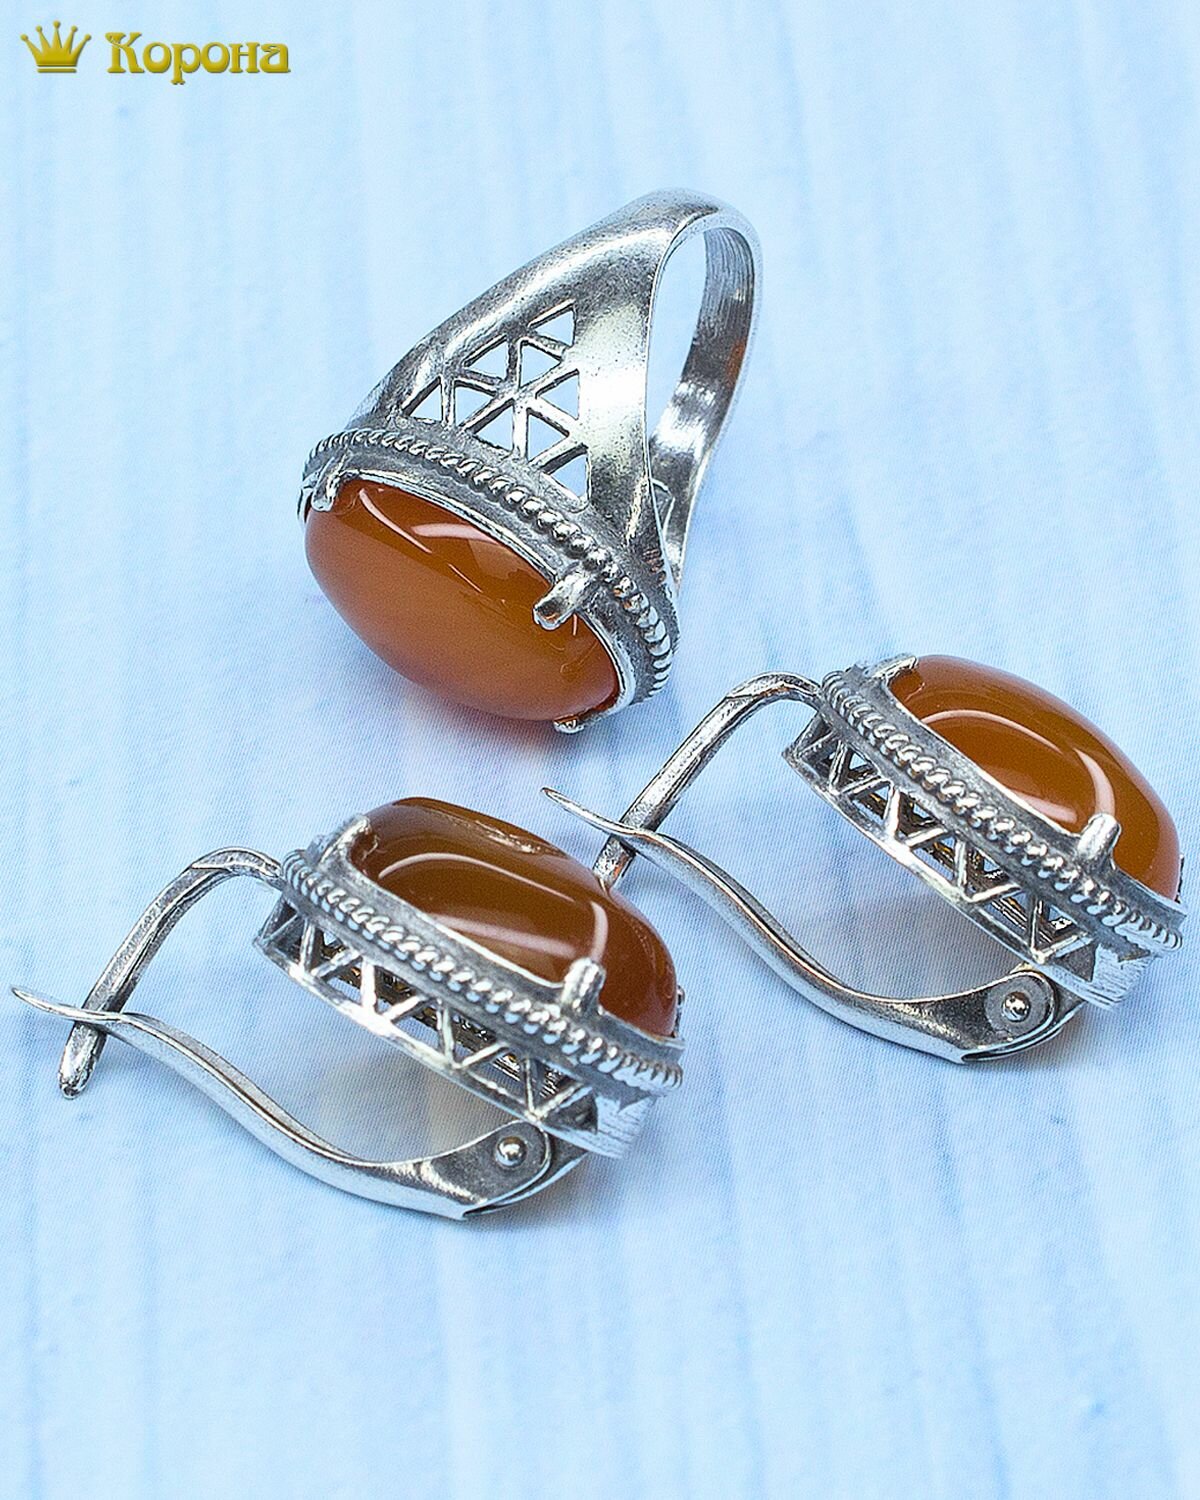 Комплект бижутерии Комплект посеребренных украшений (серьги + кольцо) с натуральным сердоликом: серьги, кольцо, сердолик